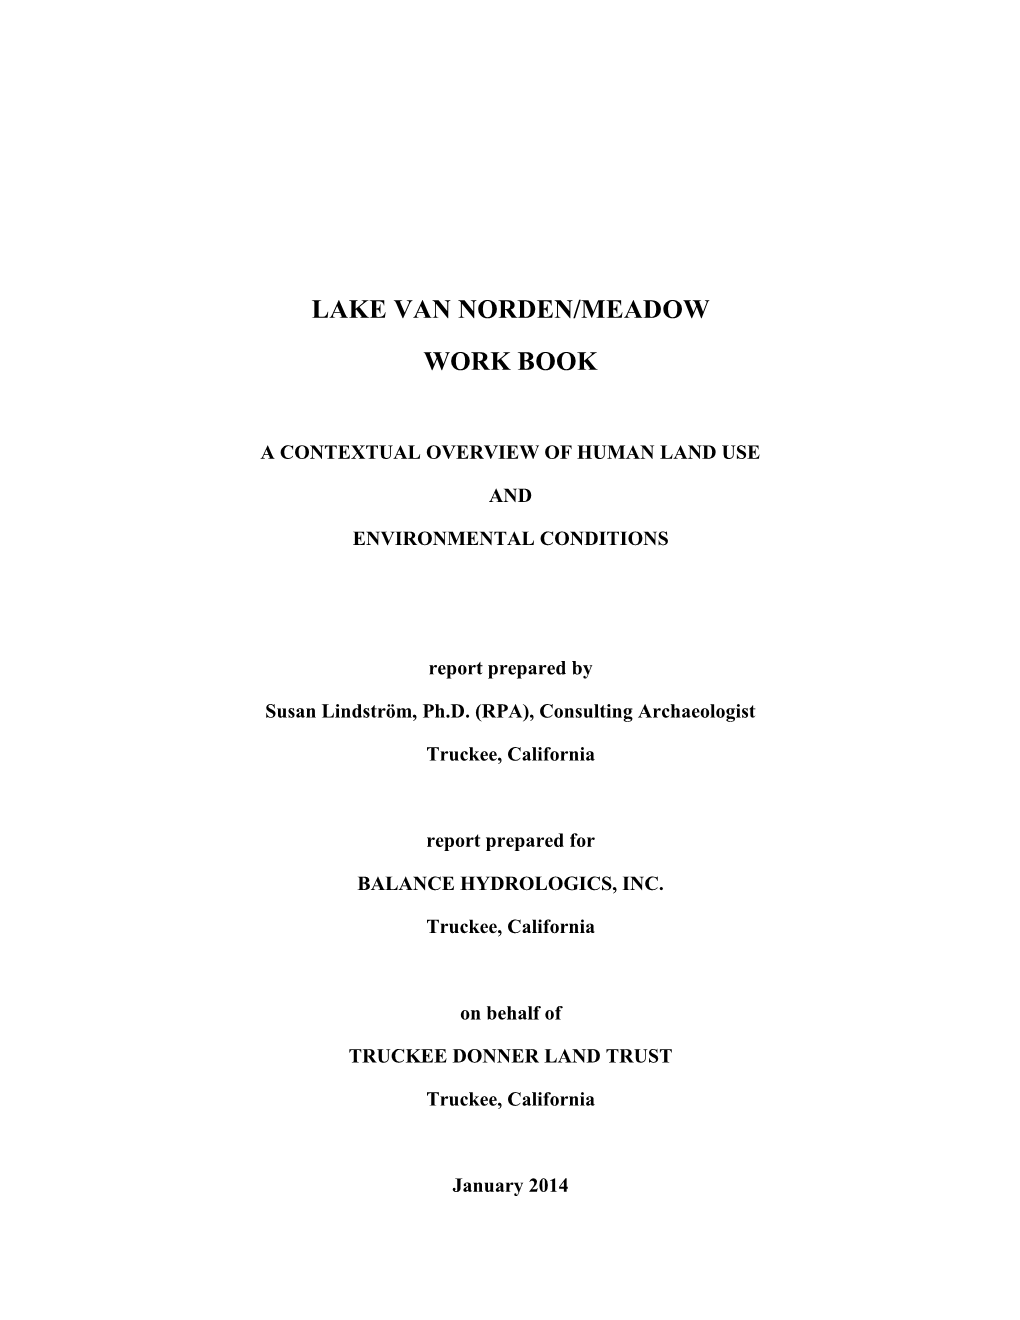 Lake Van Norden/Meadow Work Book